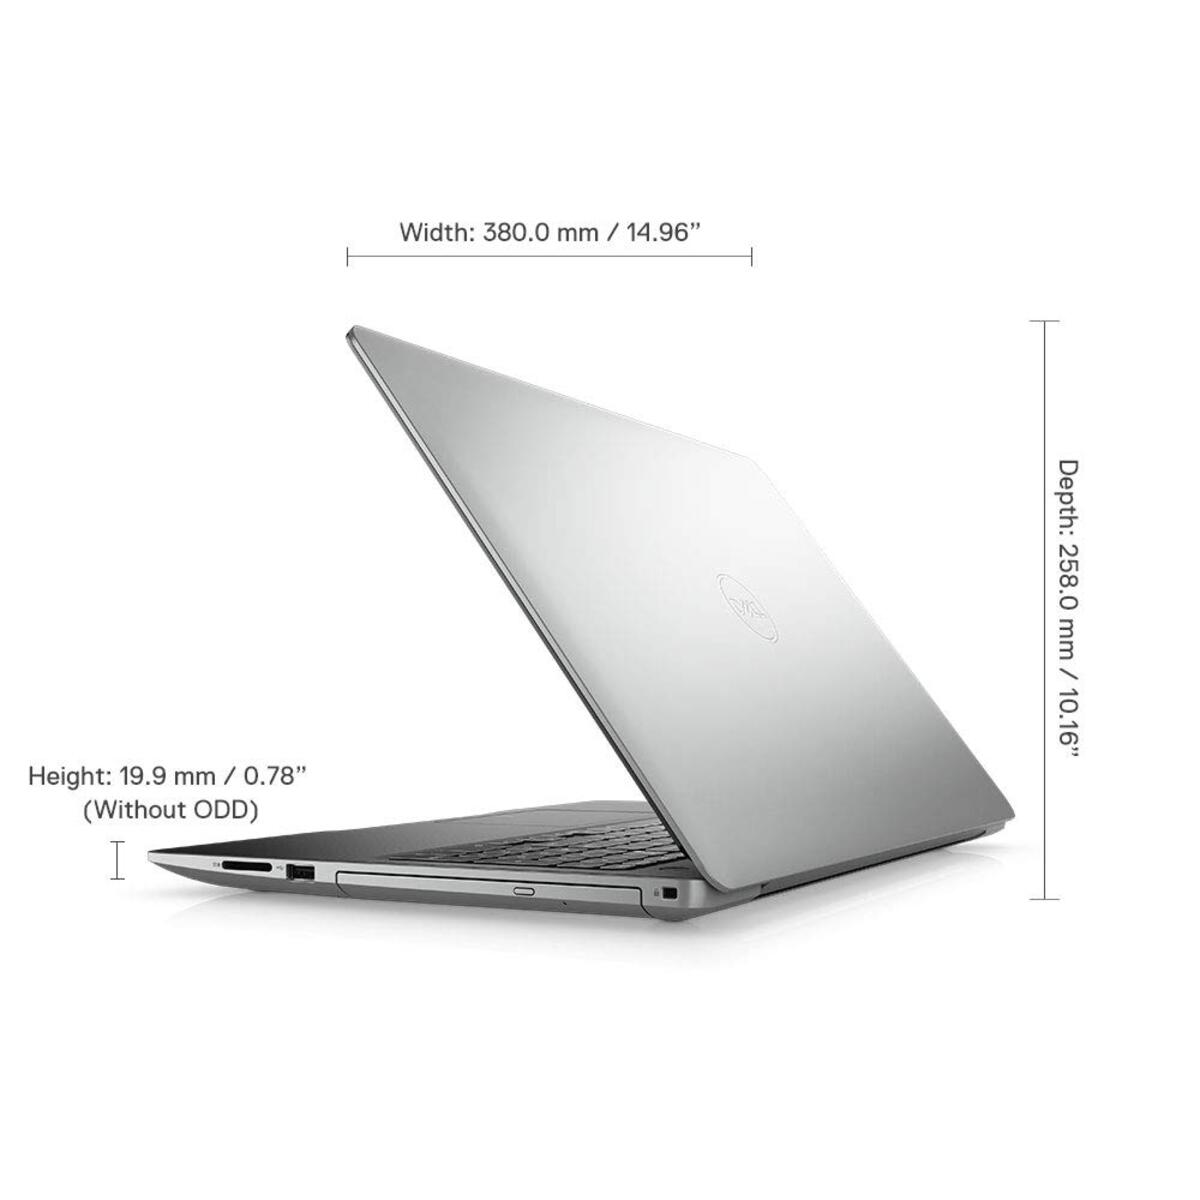 Dell Notebook 3593 Core i5 10th Gen 15.6" Win10 Platinum Silver